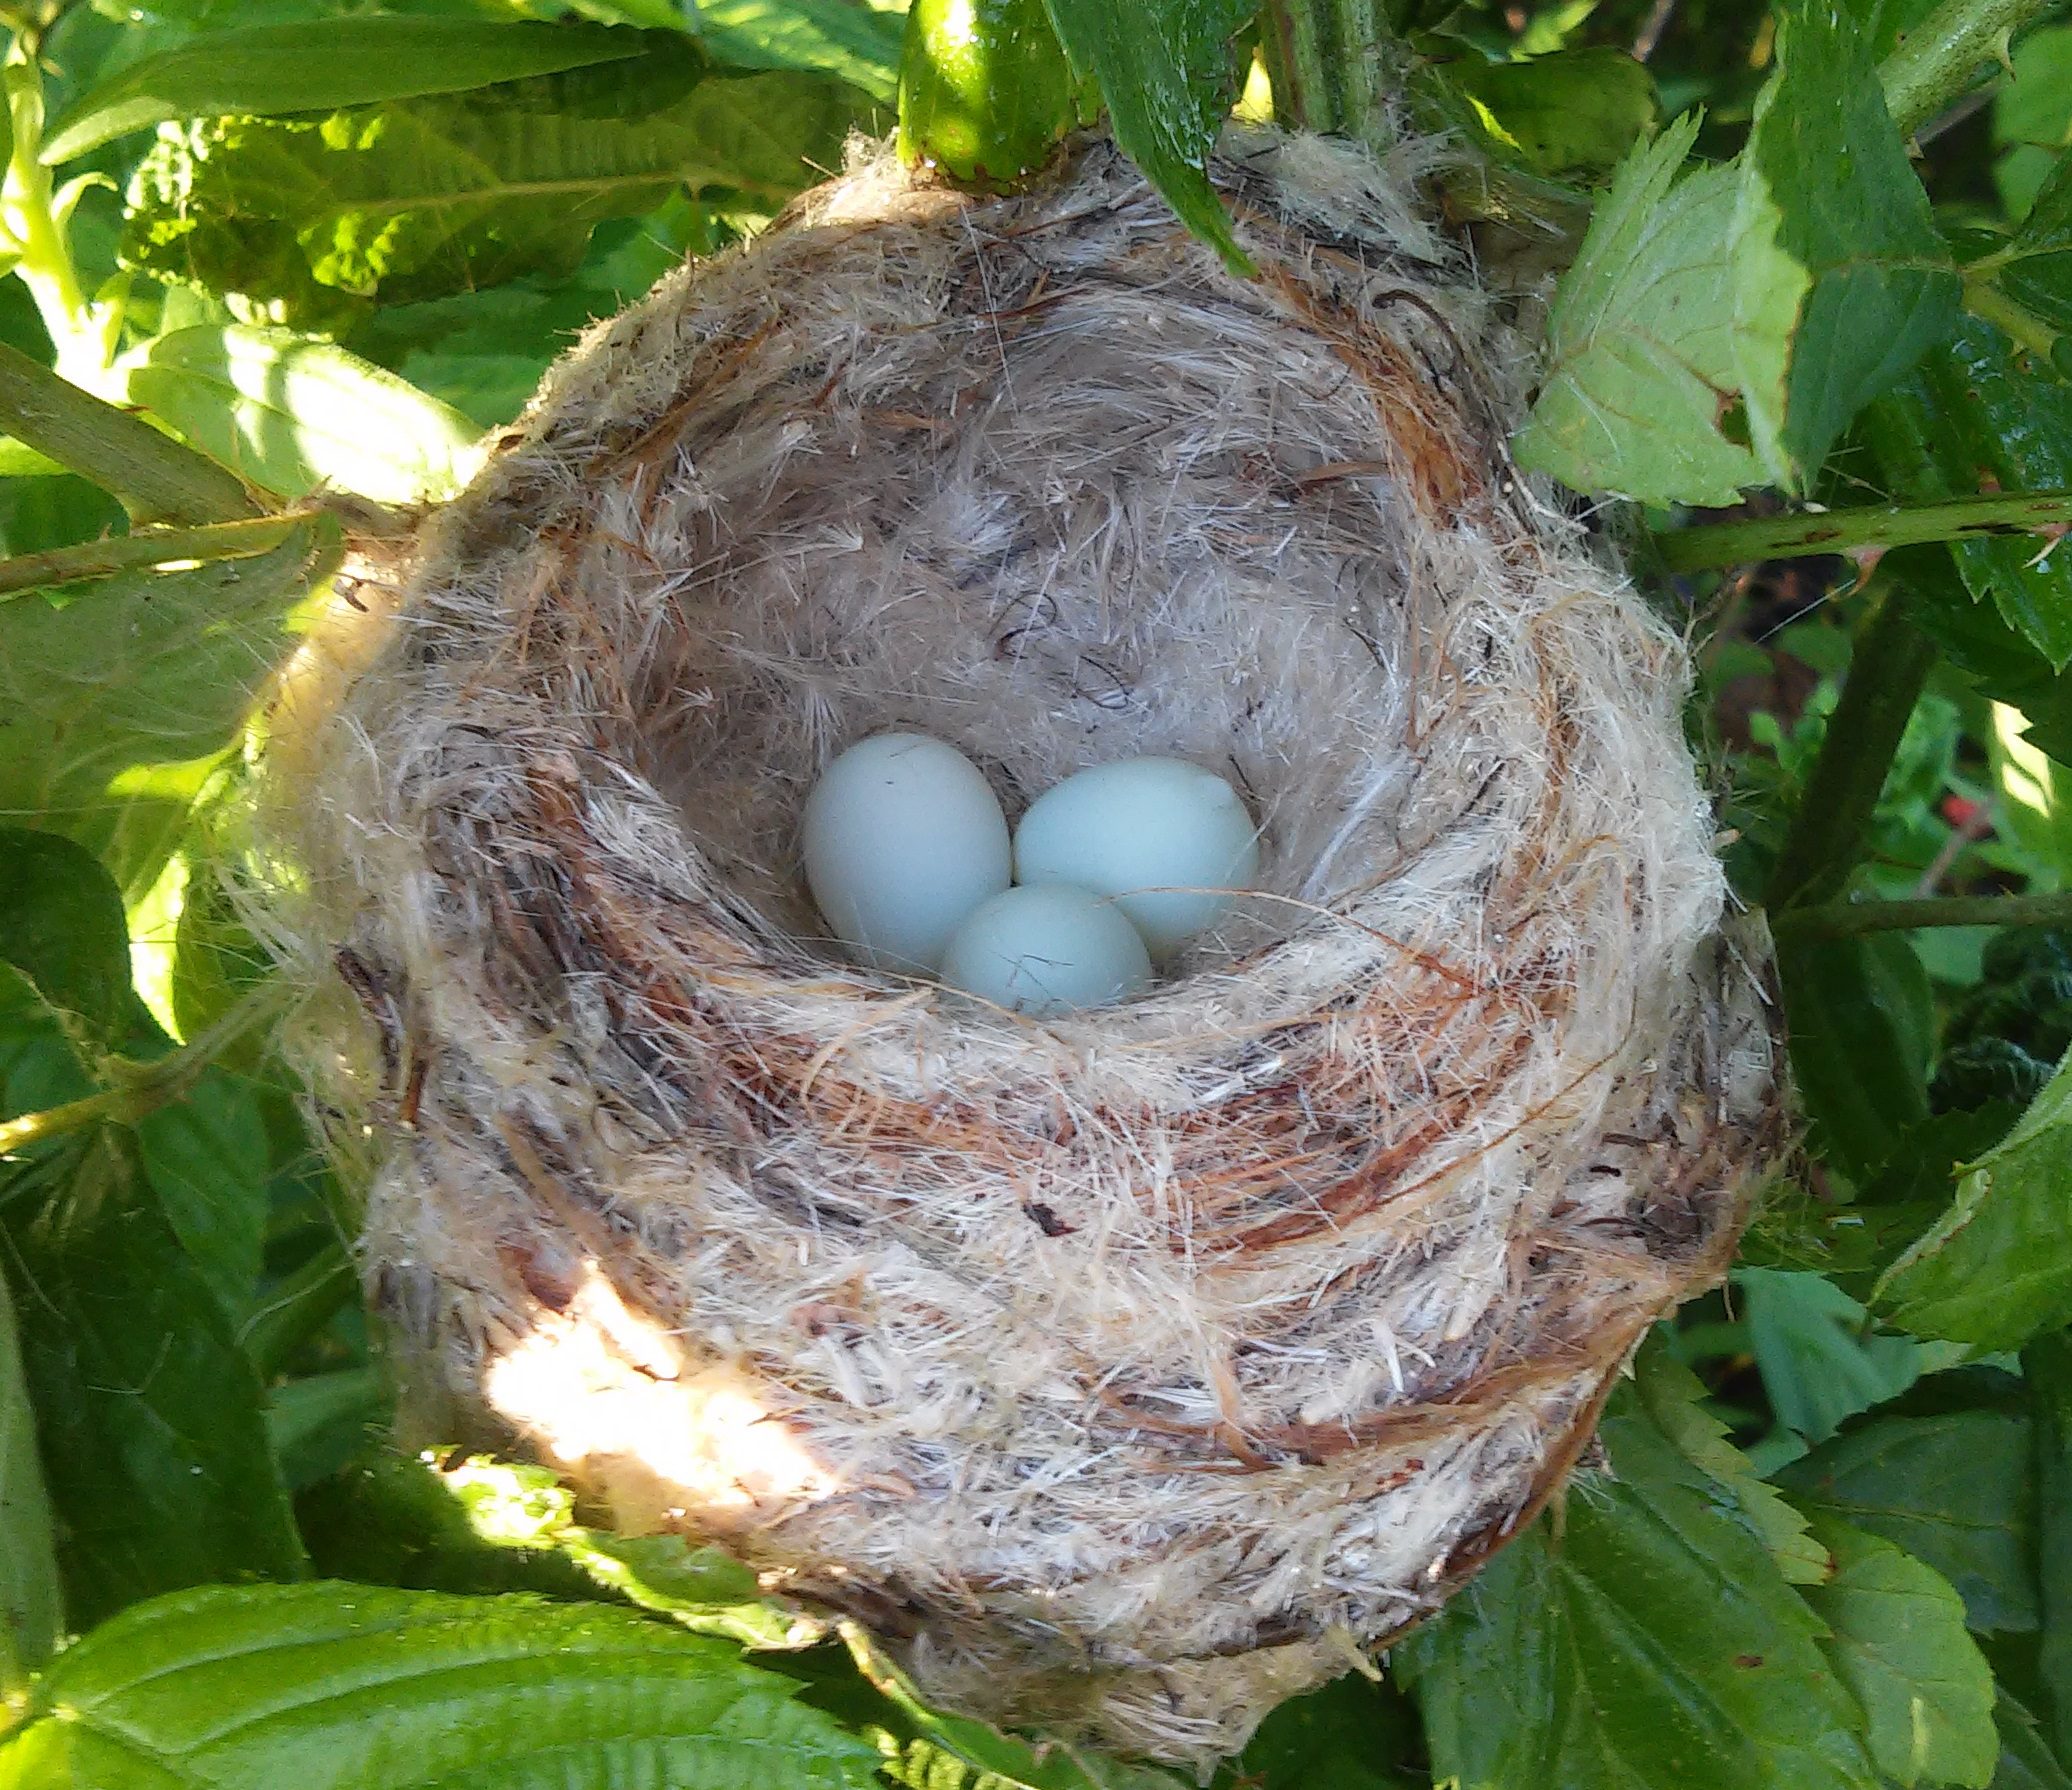 Goldy nest